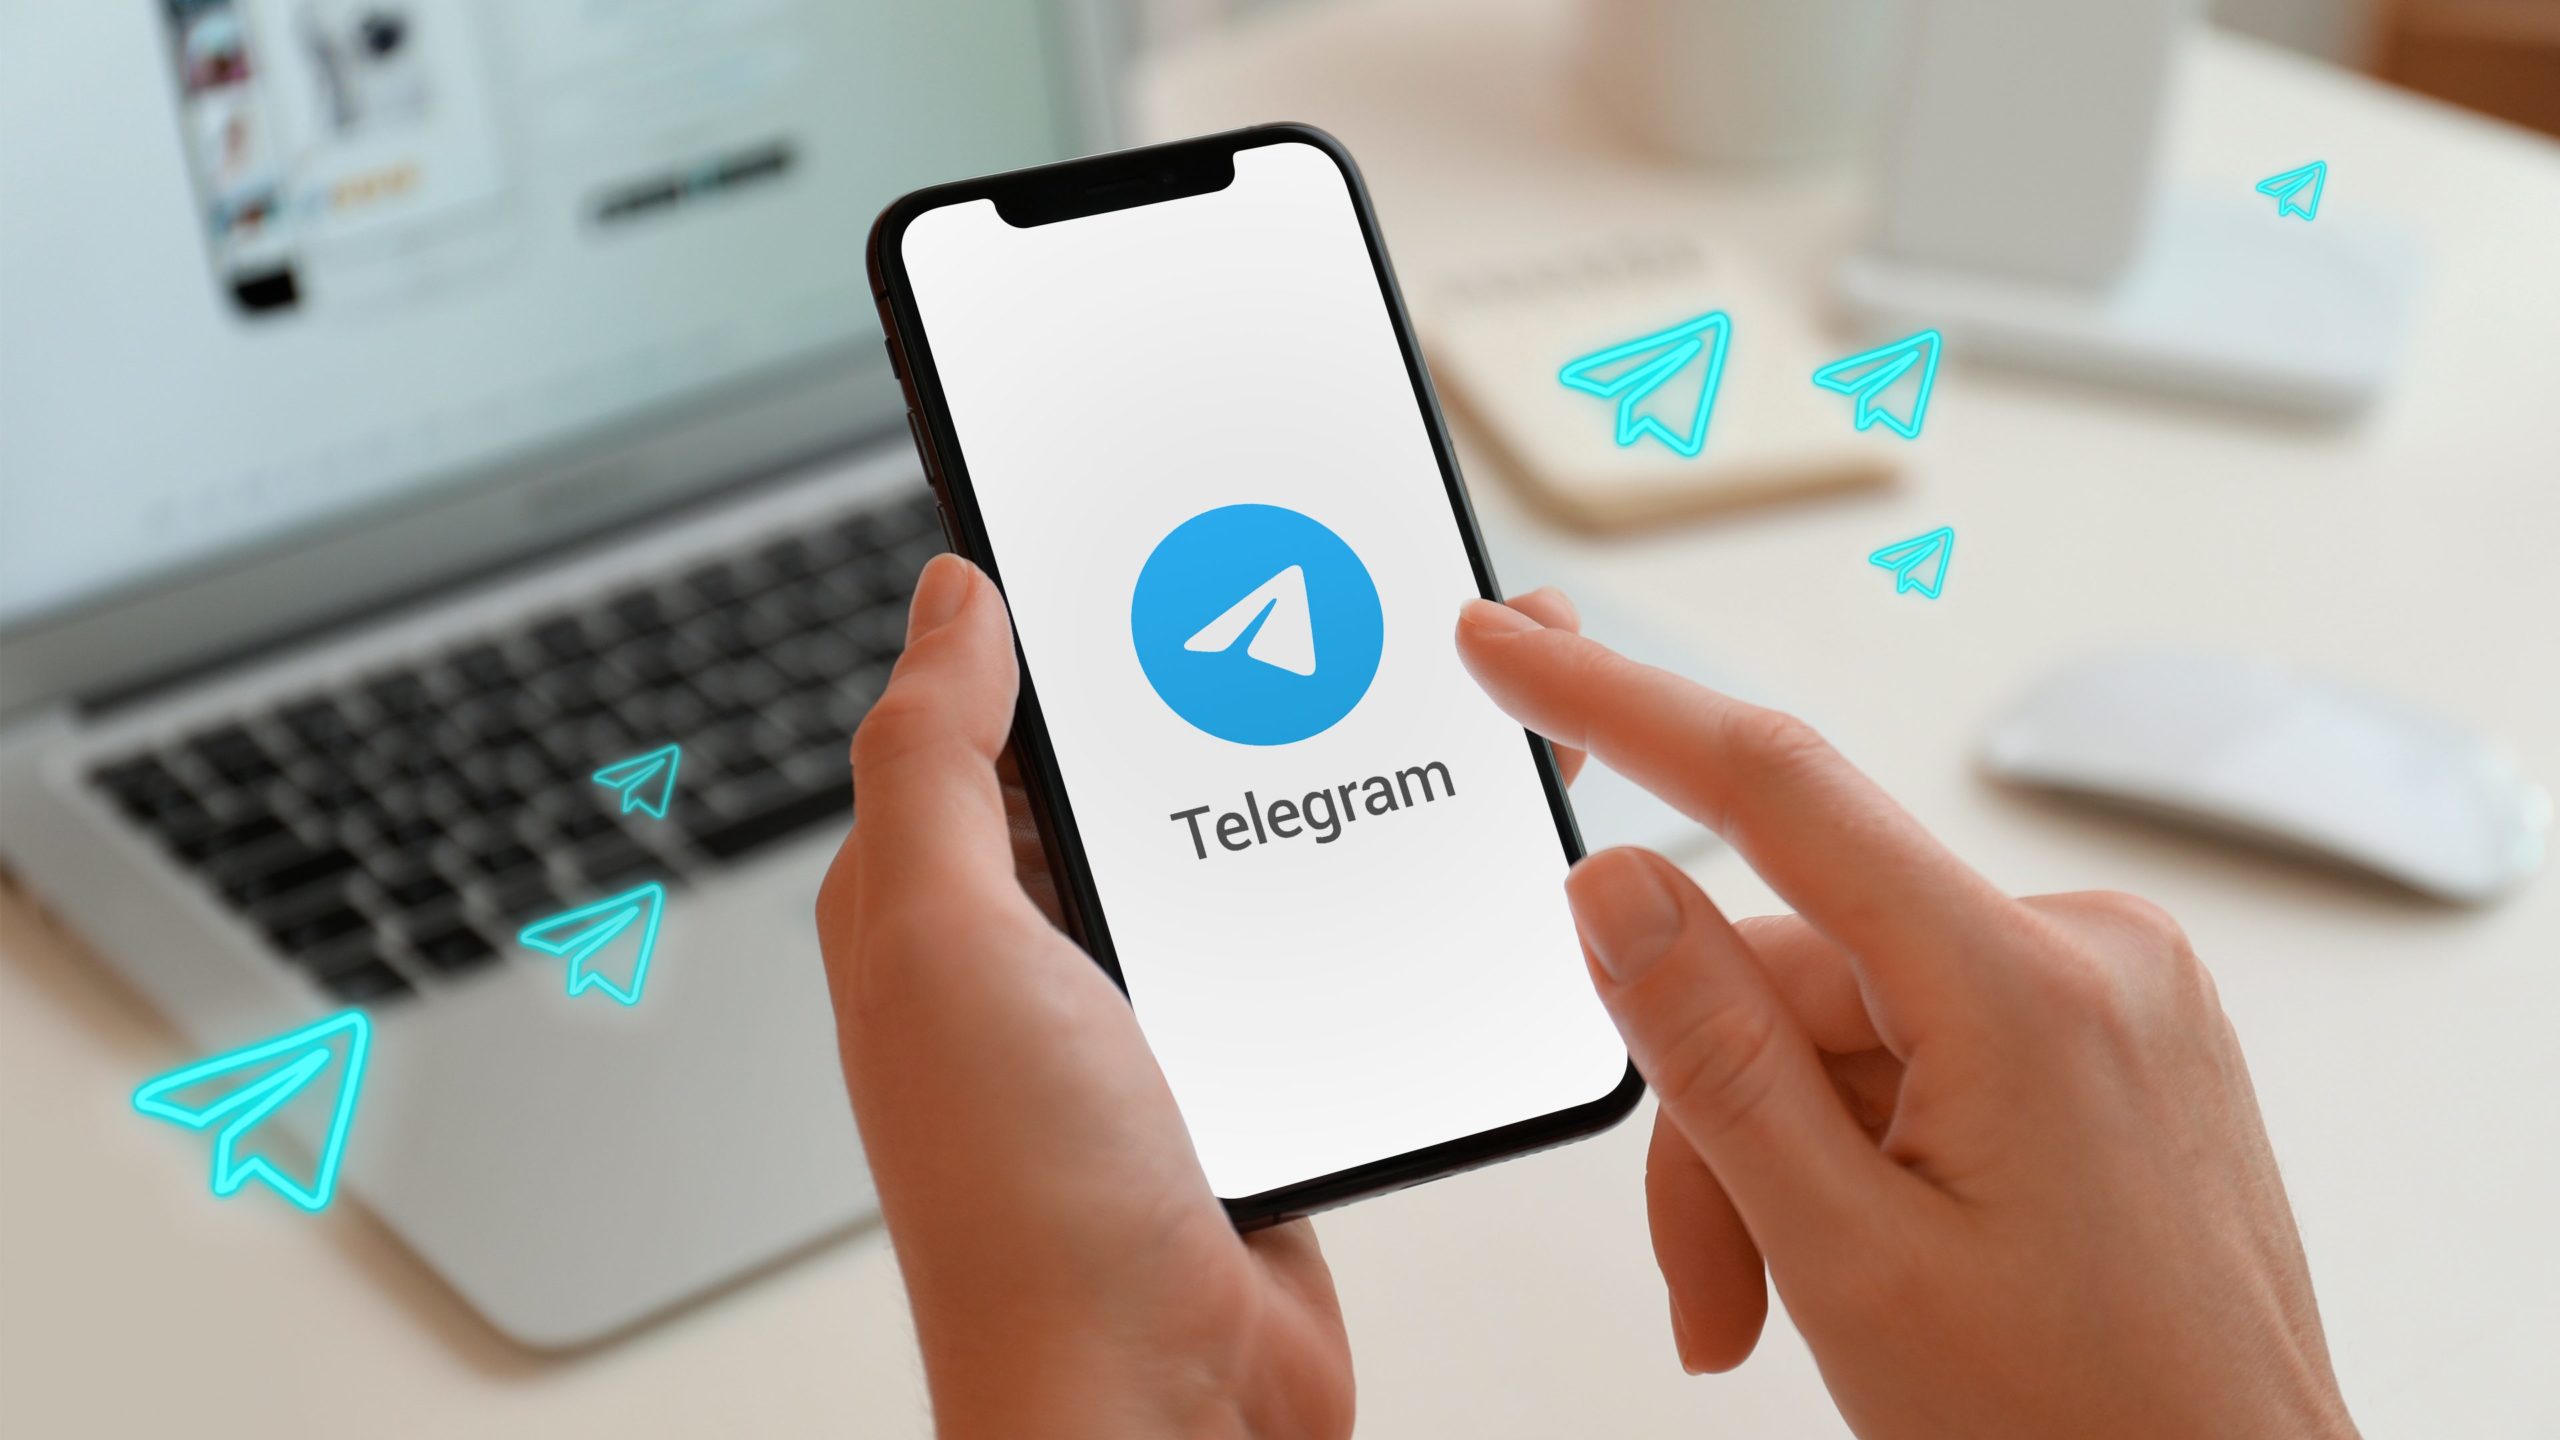 Зачем нужна накрутка в Telegram и как ее делать правильно?